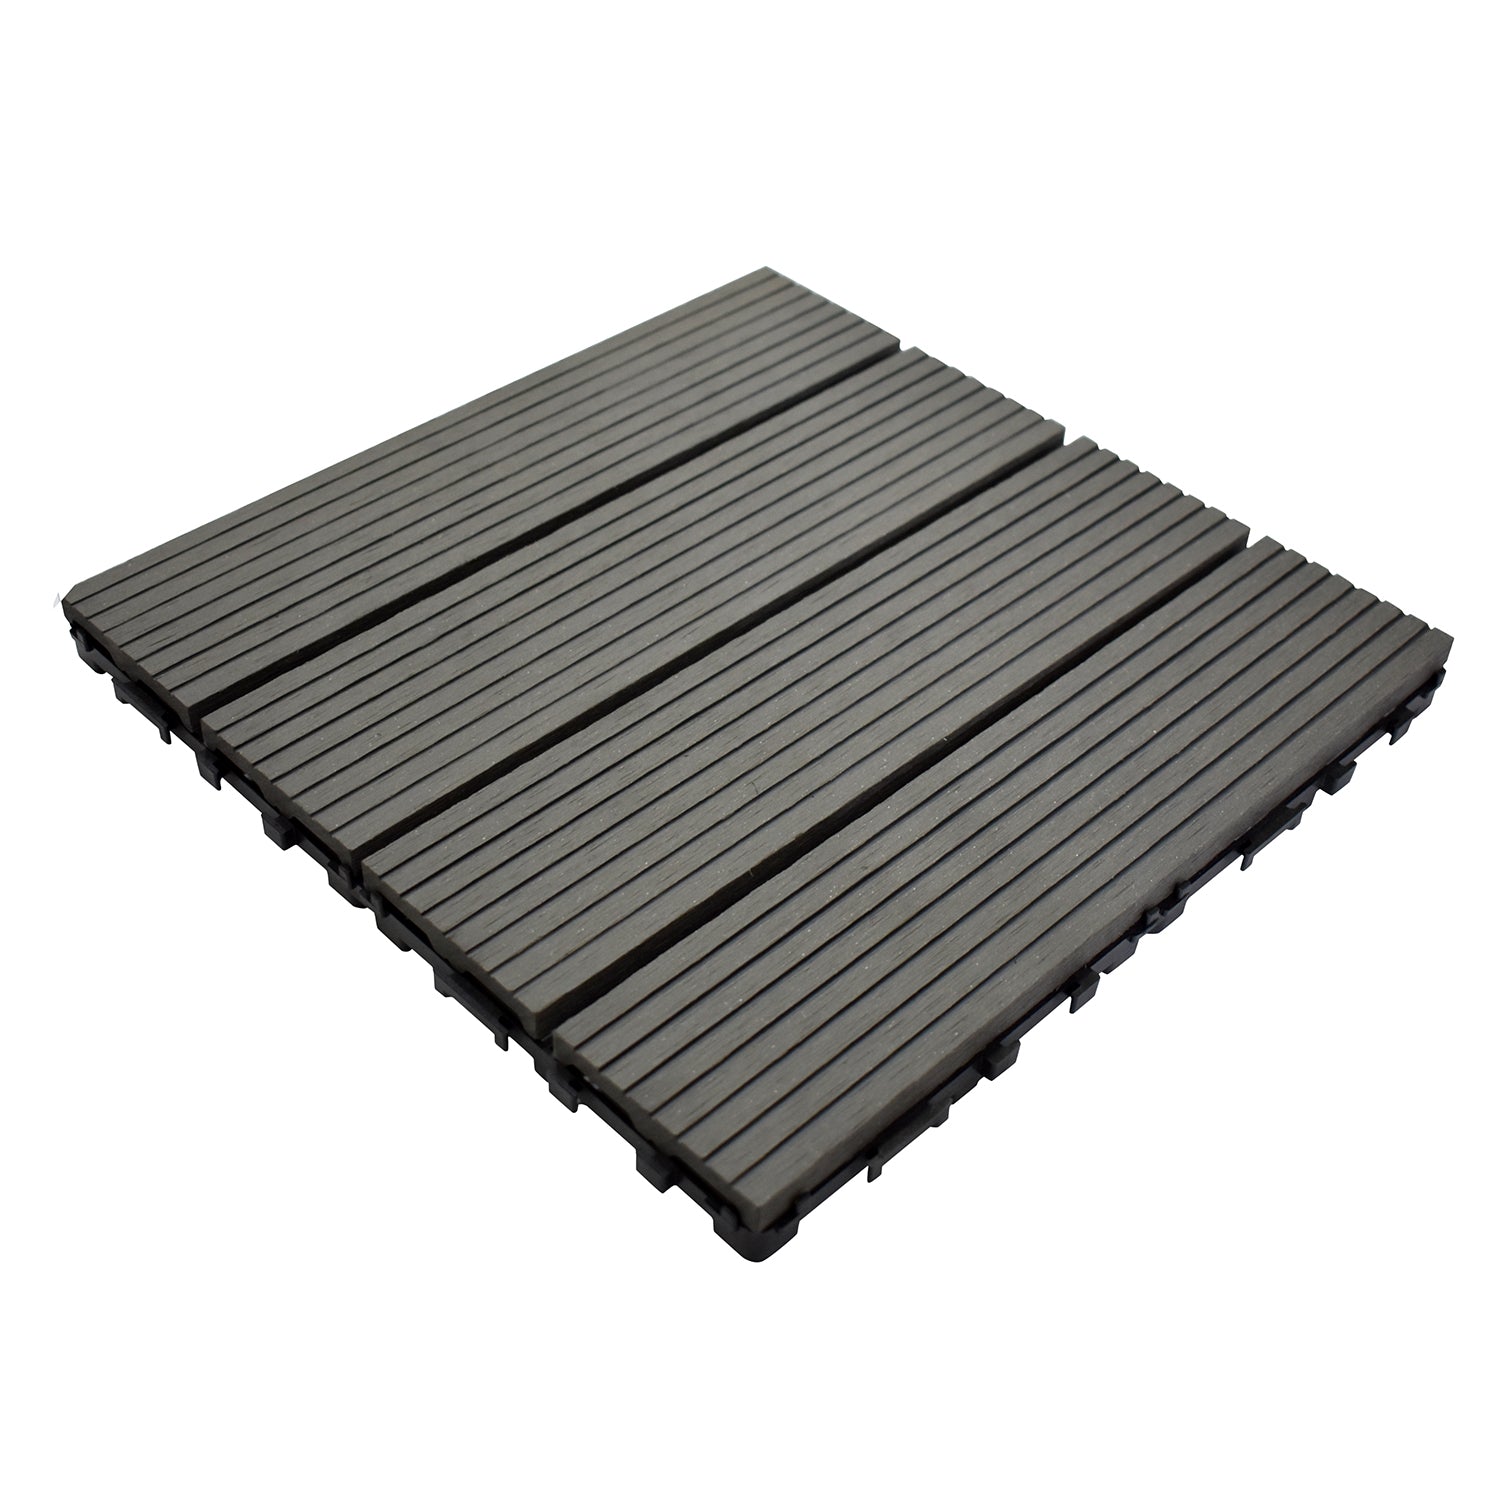 Aavana Greens WPC Deck Tiles 12"X12" Dark Grey